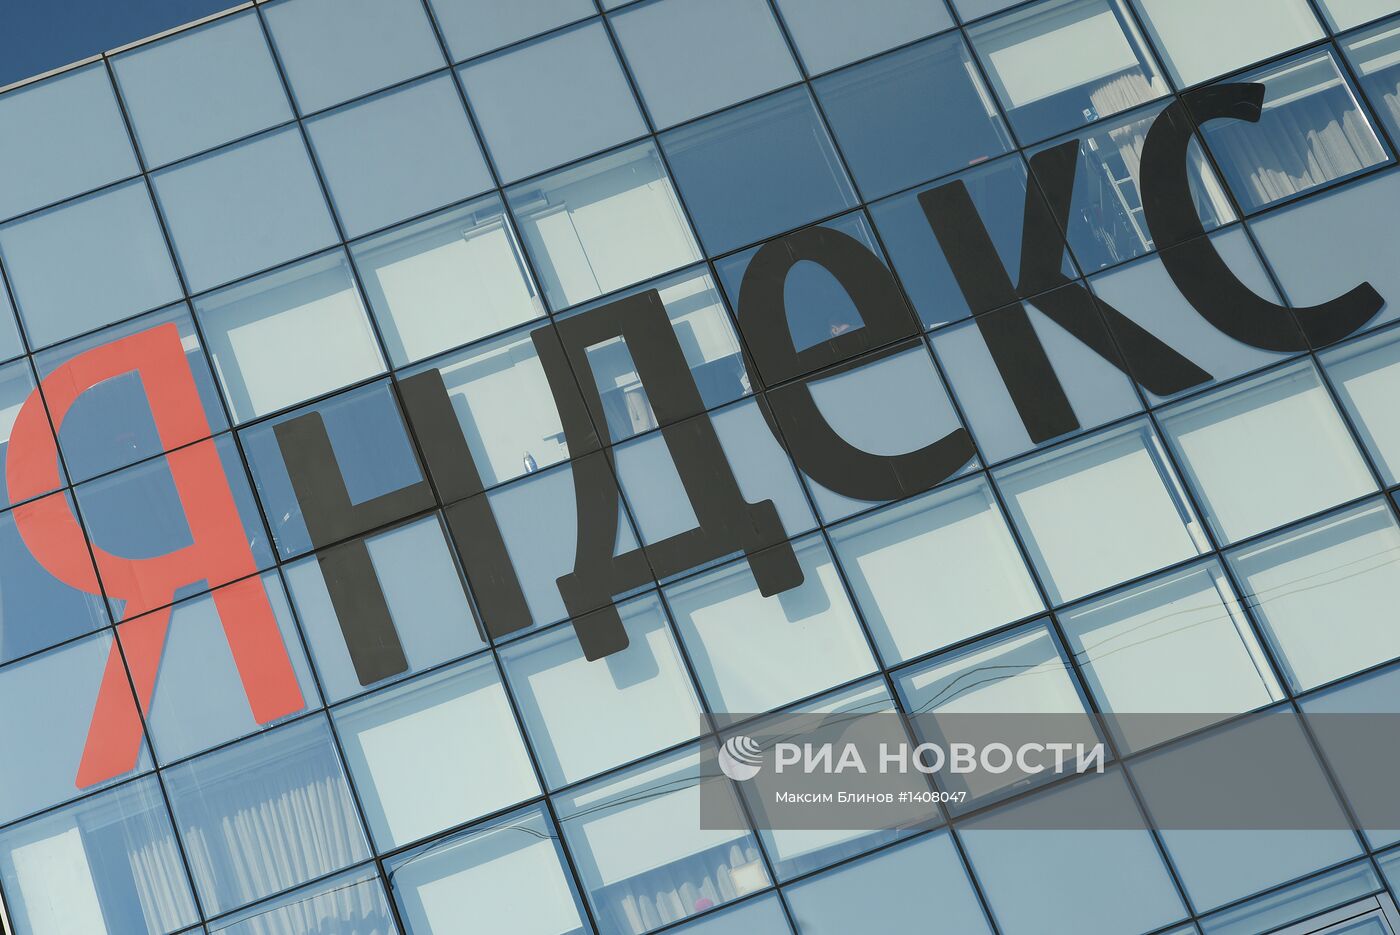 Офис интернет-компании Яндекс в Москве